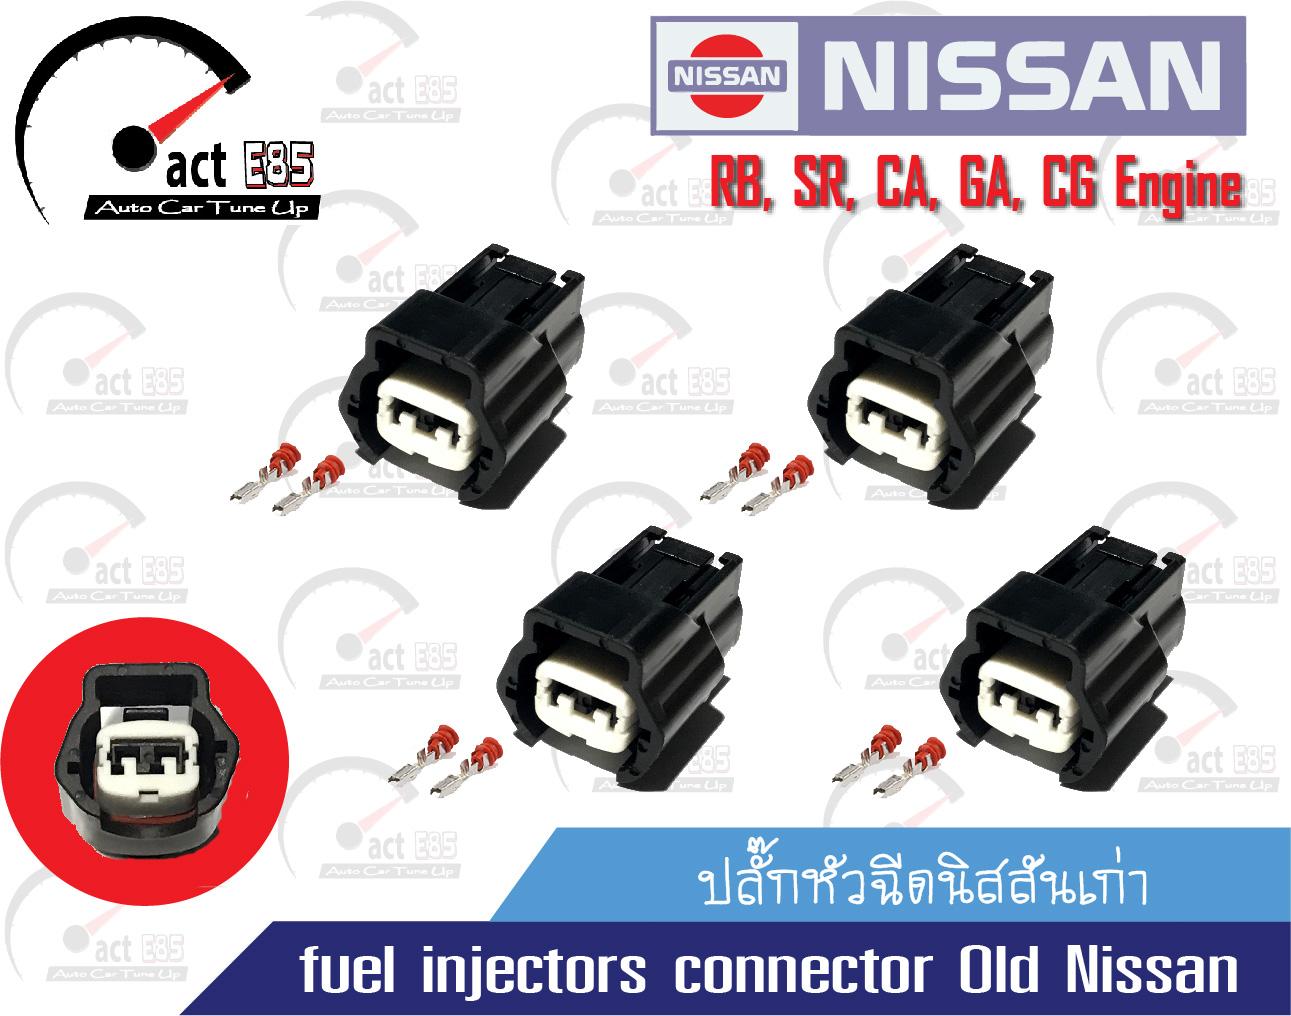 ปลั๊กหัวฉีดนิสสันเก่า (fuel injectors connector Old Nissan) ชุด 4ตัว